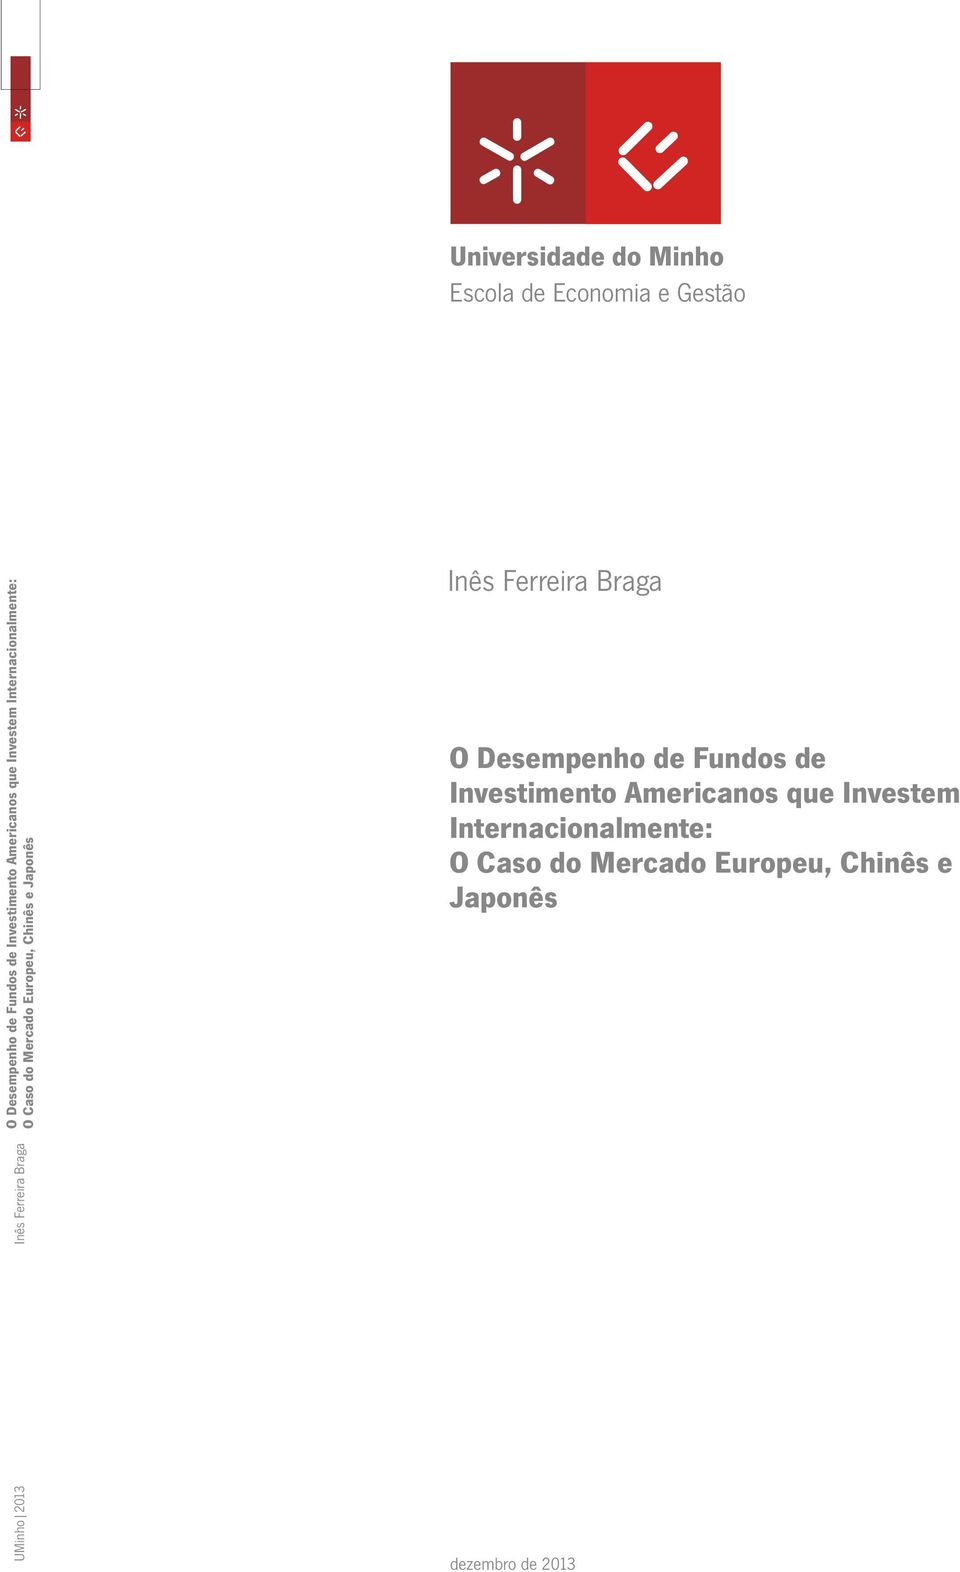 Internacionalmente: O Caso do Mercado Europeu, Chinês e Japonês Universidade do Minho Escola